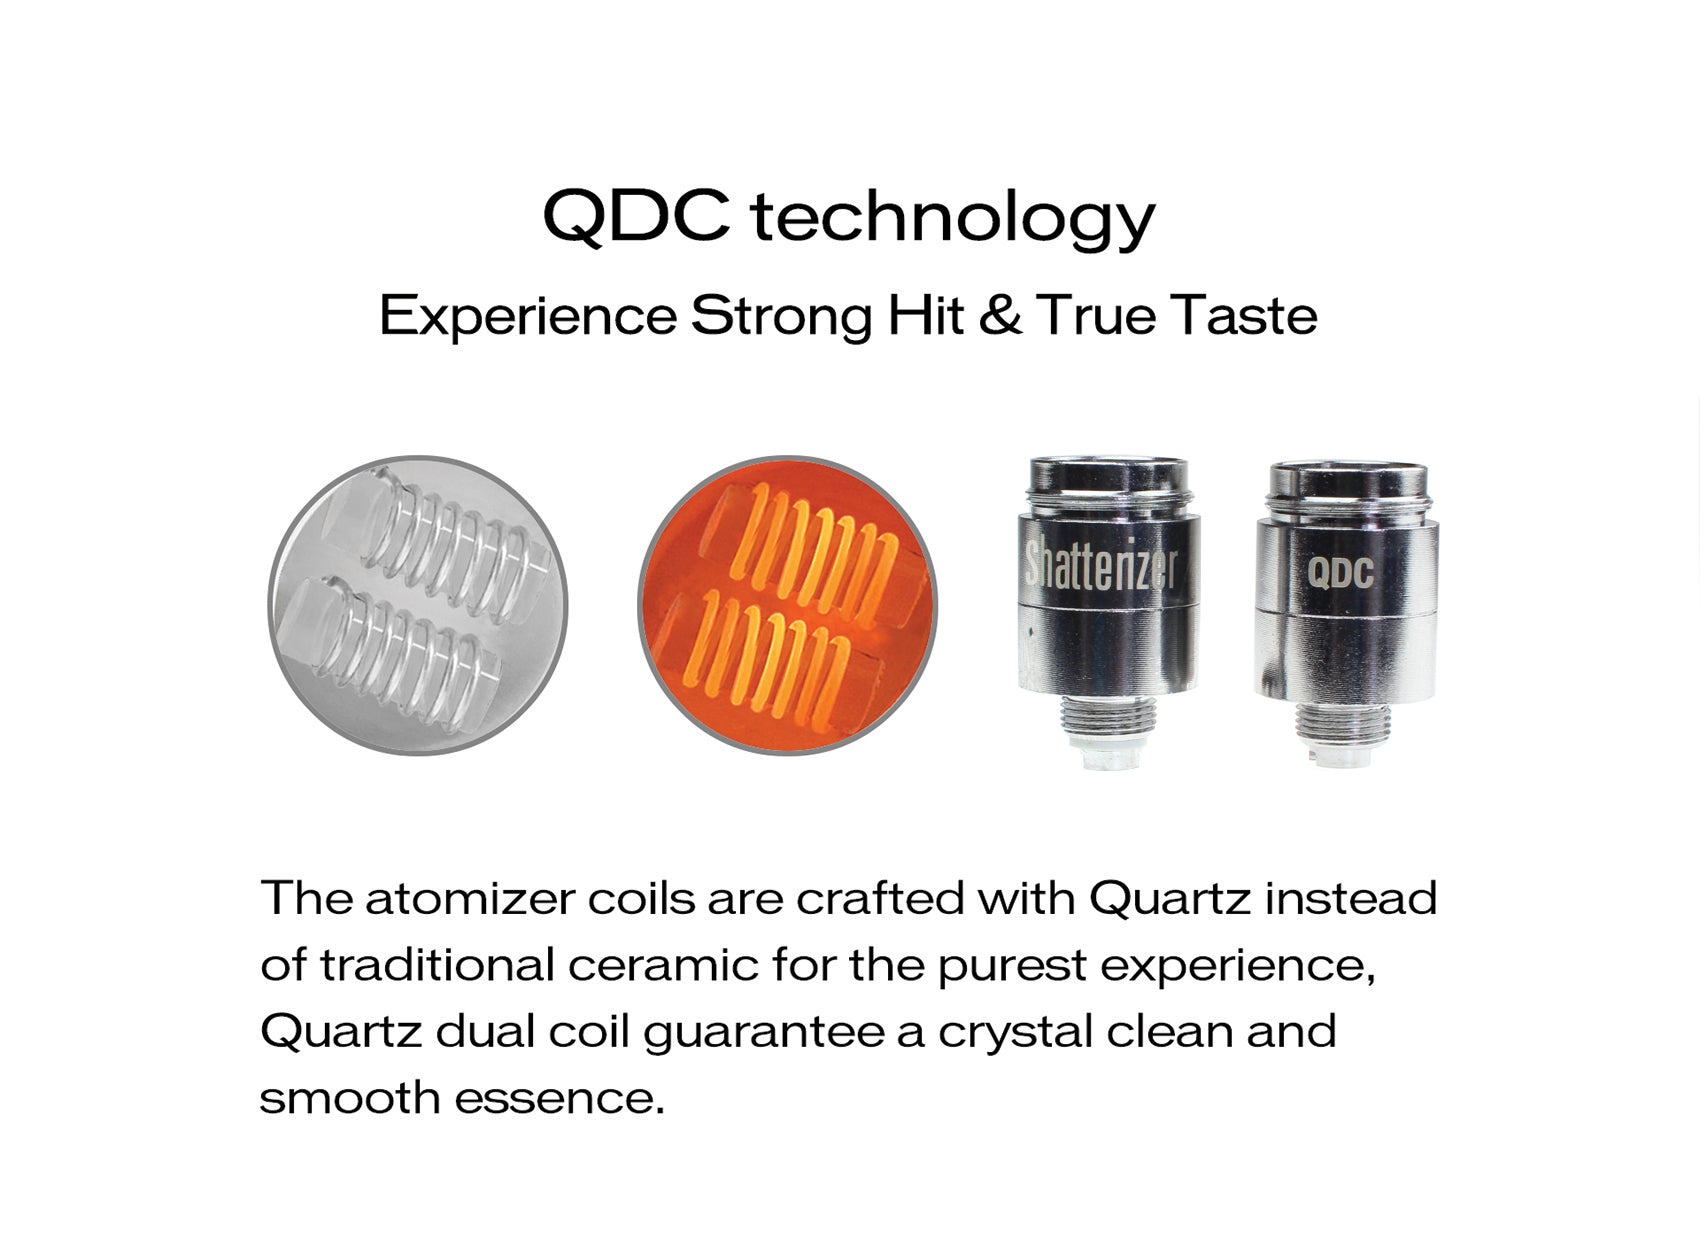 Shatterizer replacement QDC Quartz Dual Coils 5 Packs